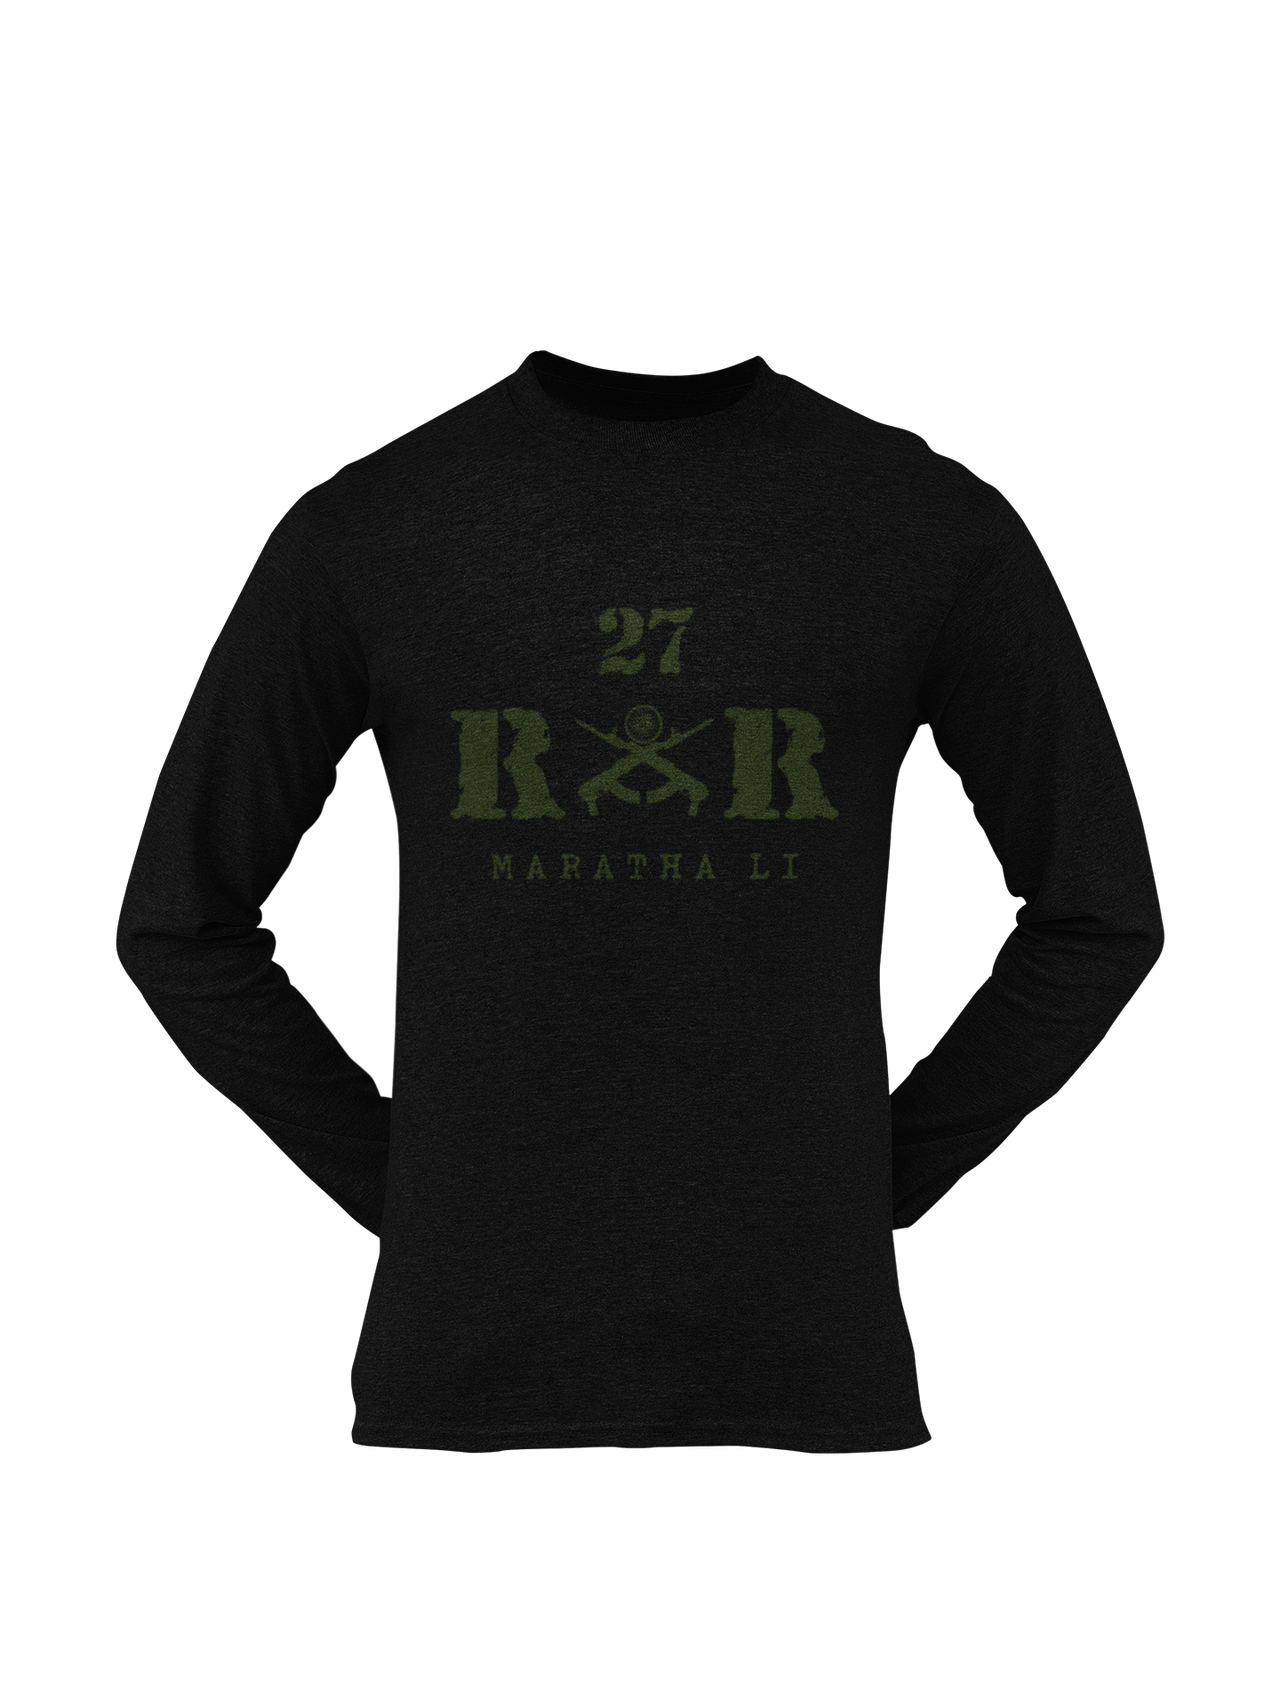 Rashtriya Rifles T-shirt - 28 RR Jak Rif (Men)